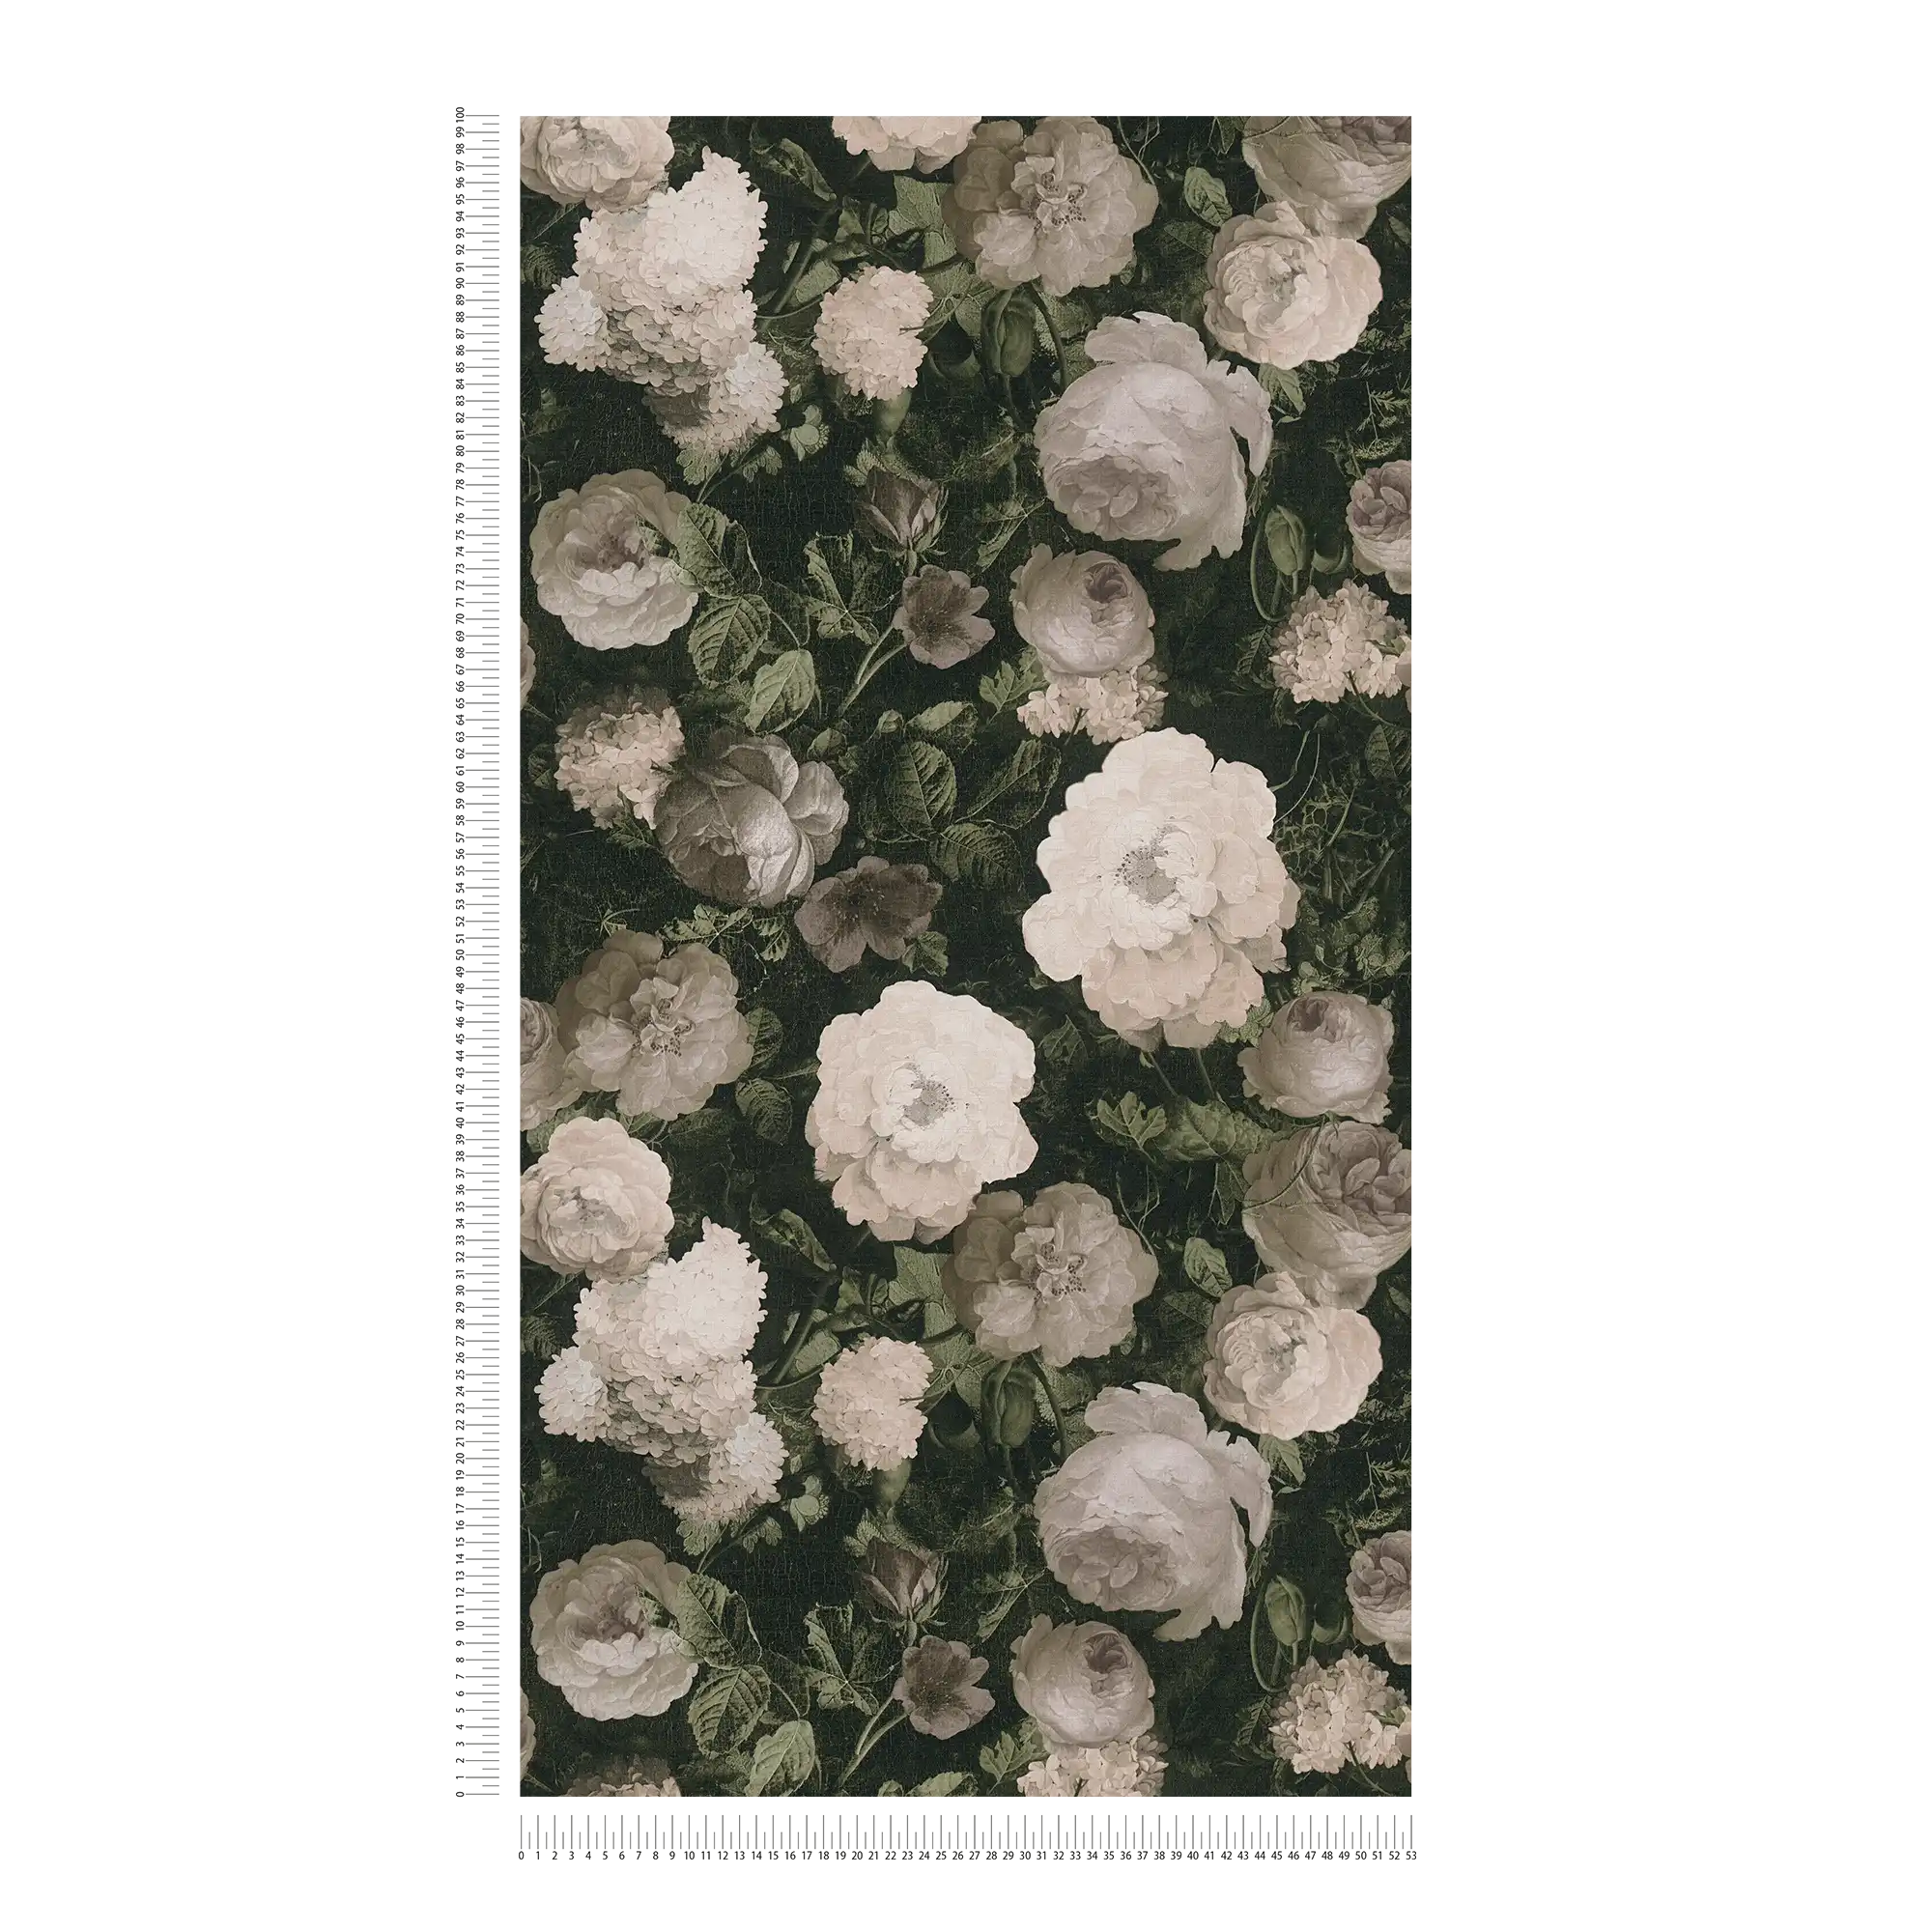             Vliestapete mit Rosen, Blütenteppich – Creme, Grün, Grau
        